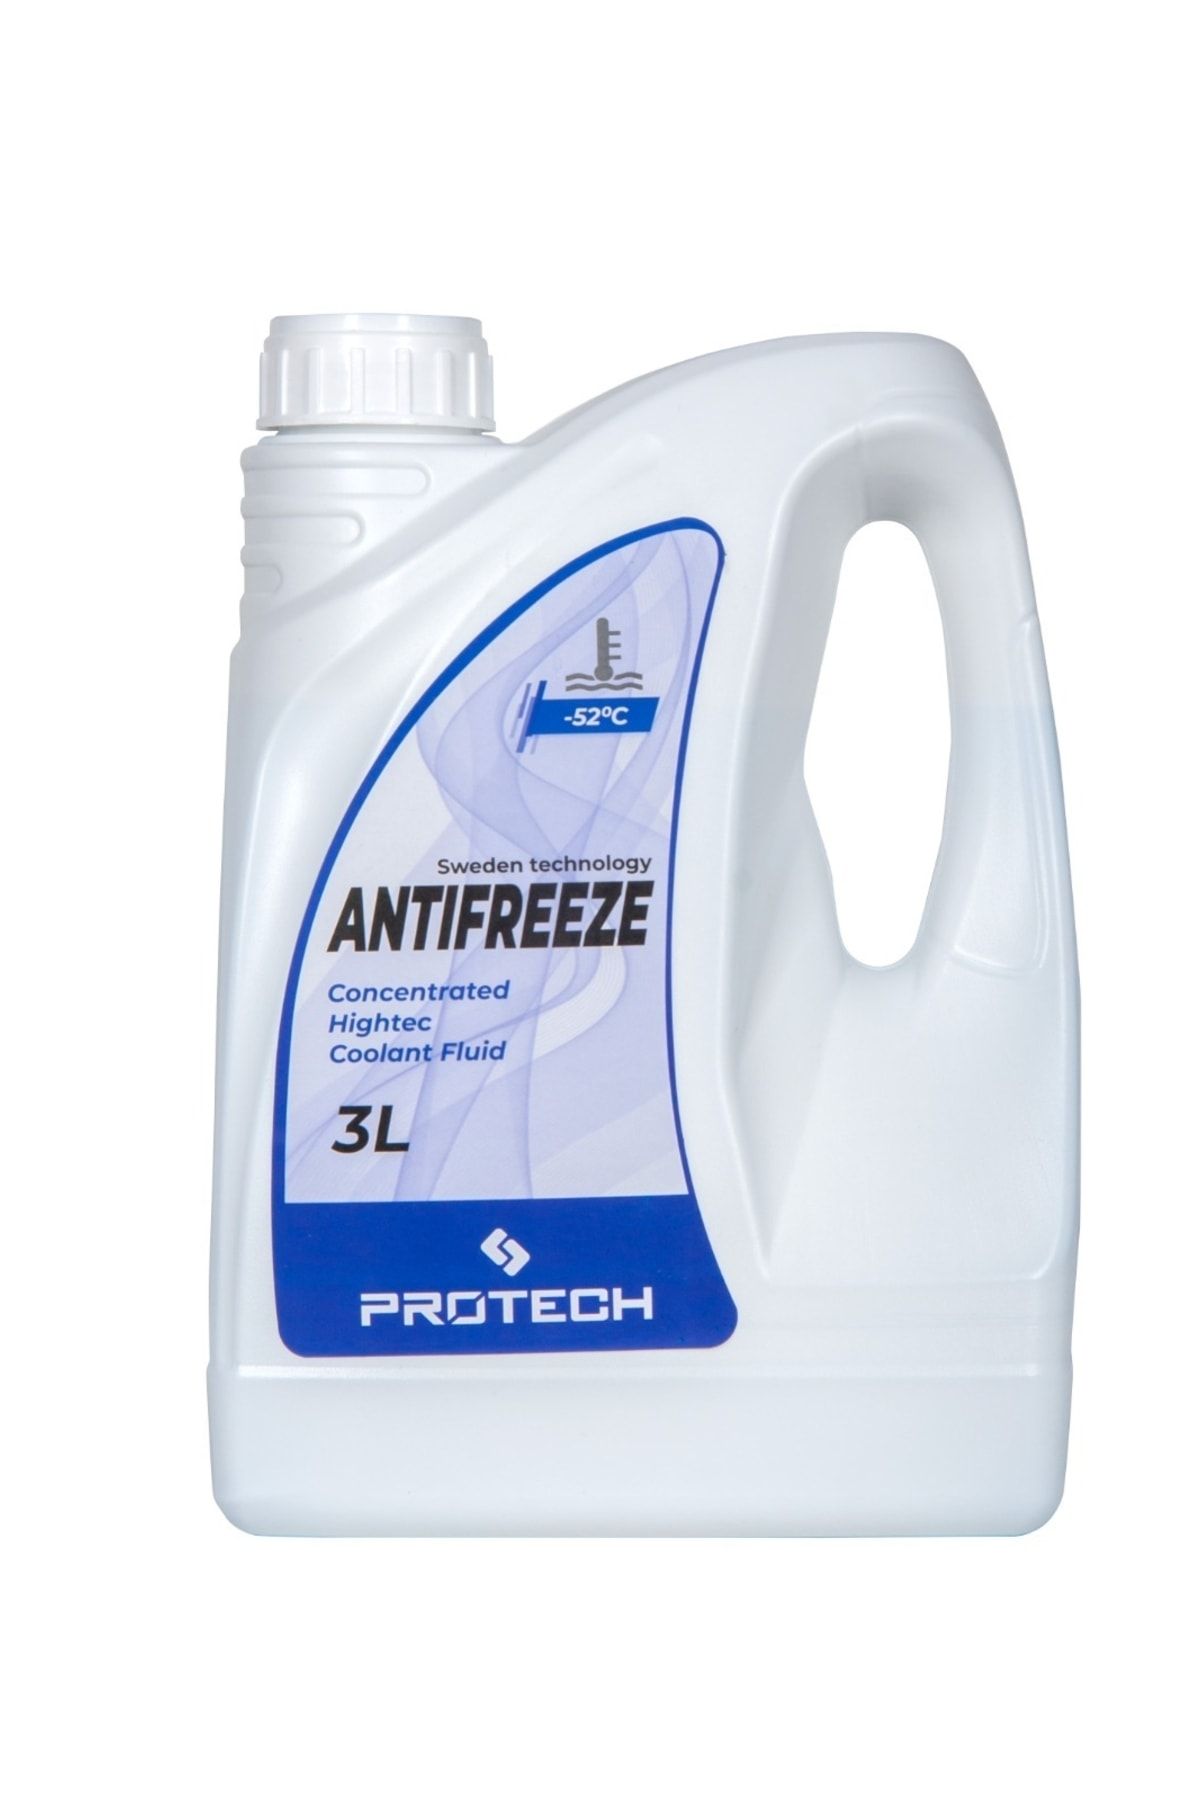 Protech Antifriz -52 3 Litre